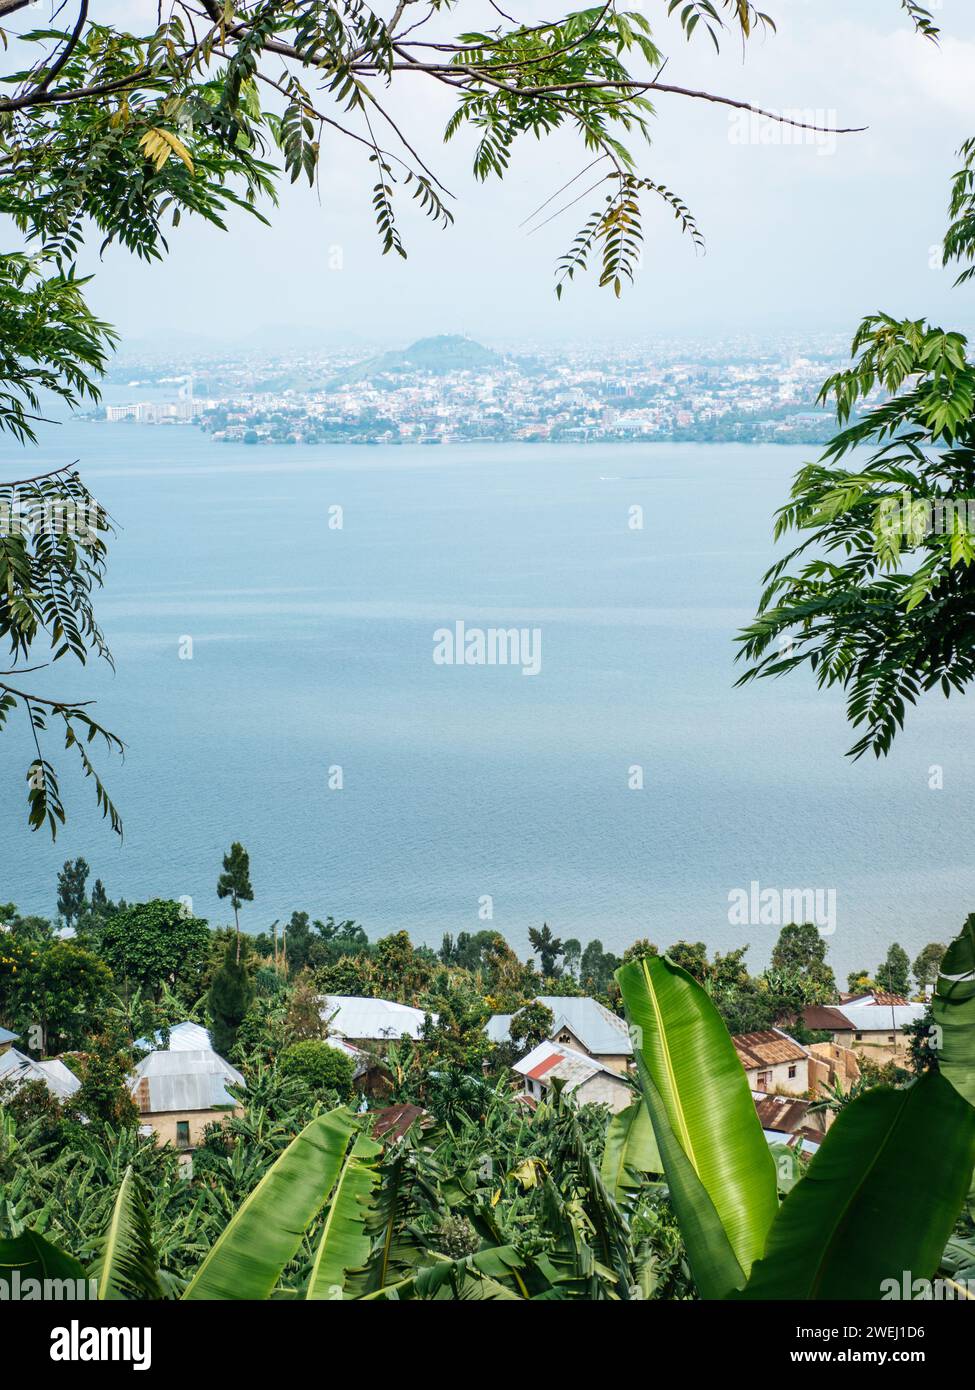 Gisenyi, a town on the north shore of Lake Kivu in Rwanda, East Africa Stock Photo